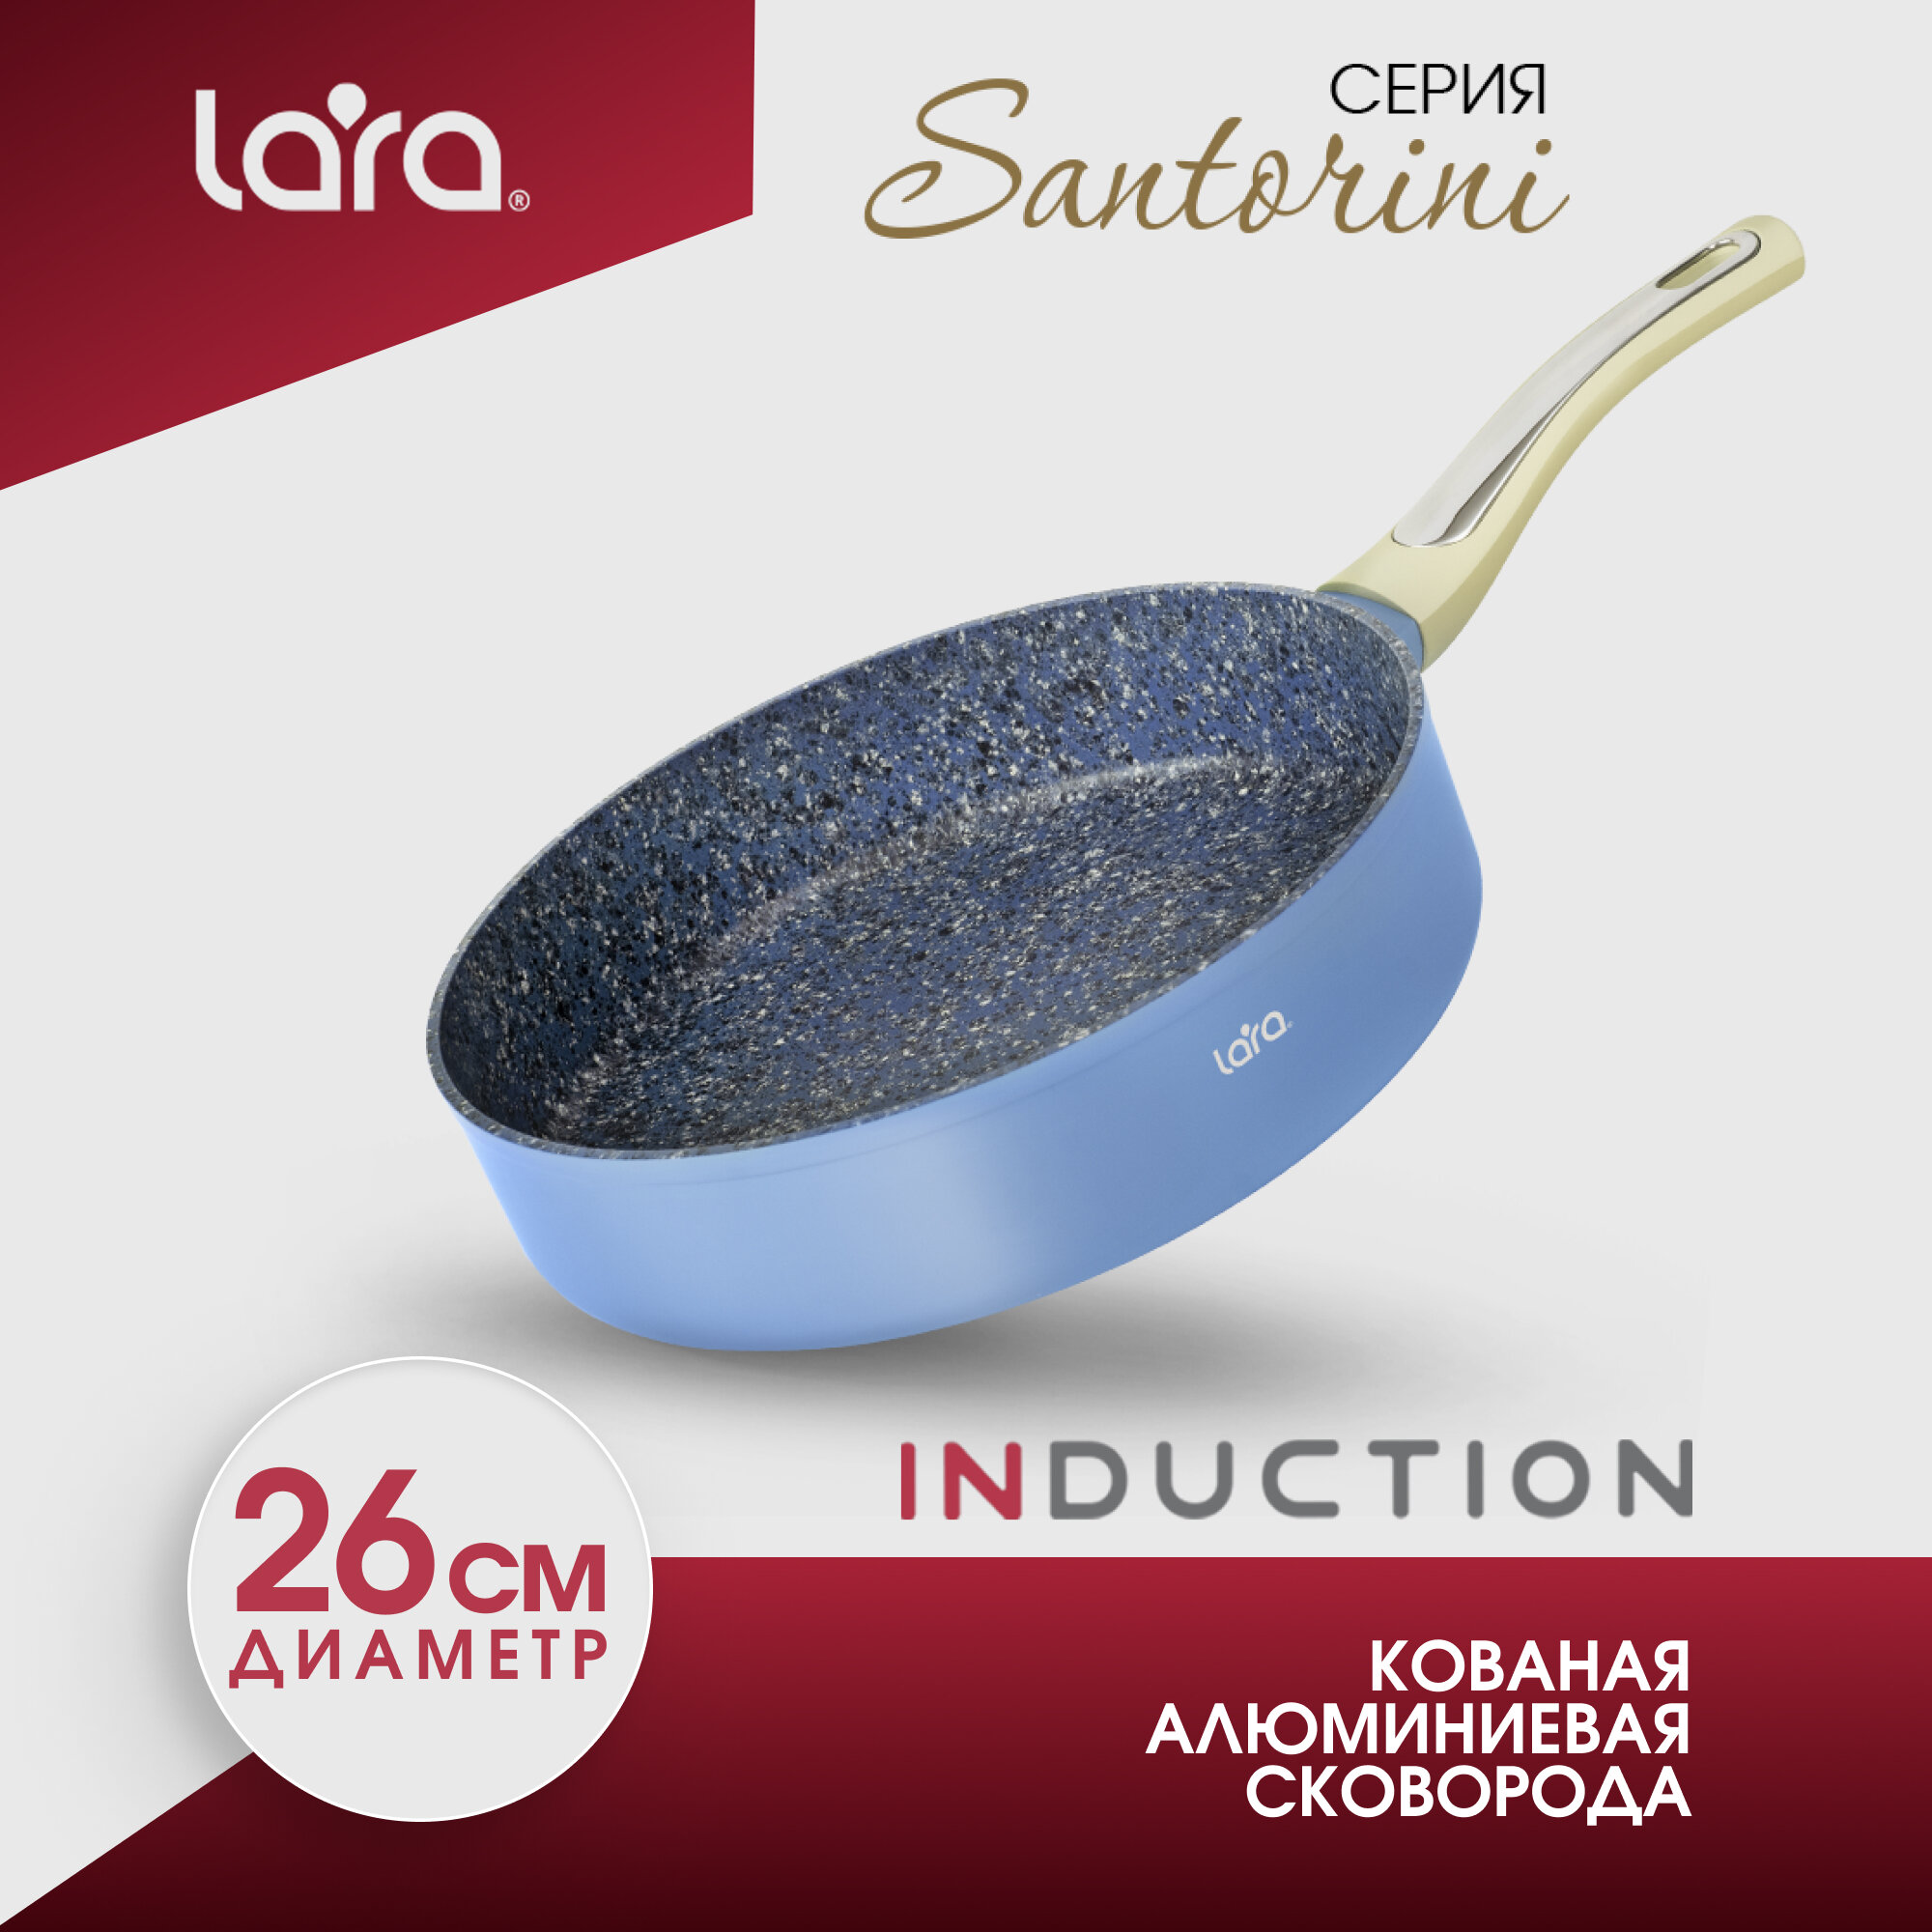 Сковорода для индукционной плиты LARA LR01-11 Santorini, d26 см, алюминиевая с антипригарным покрытием